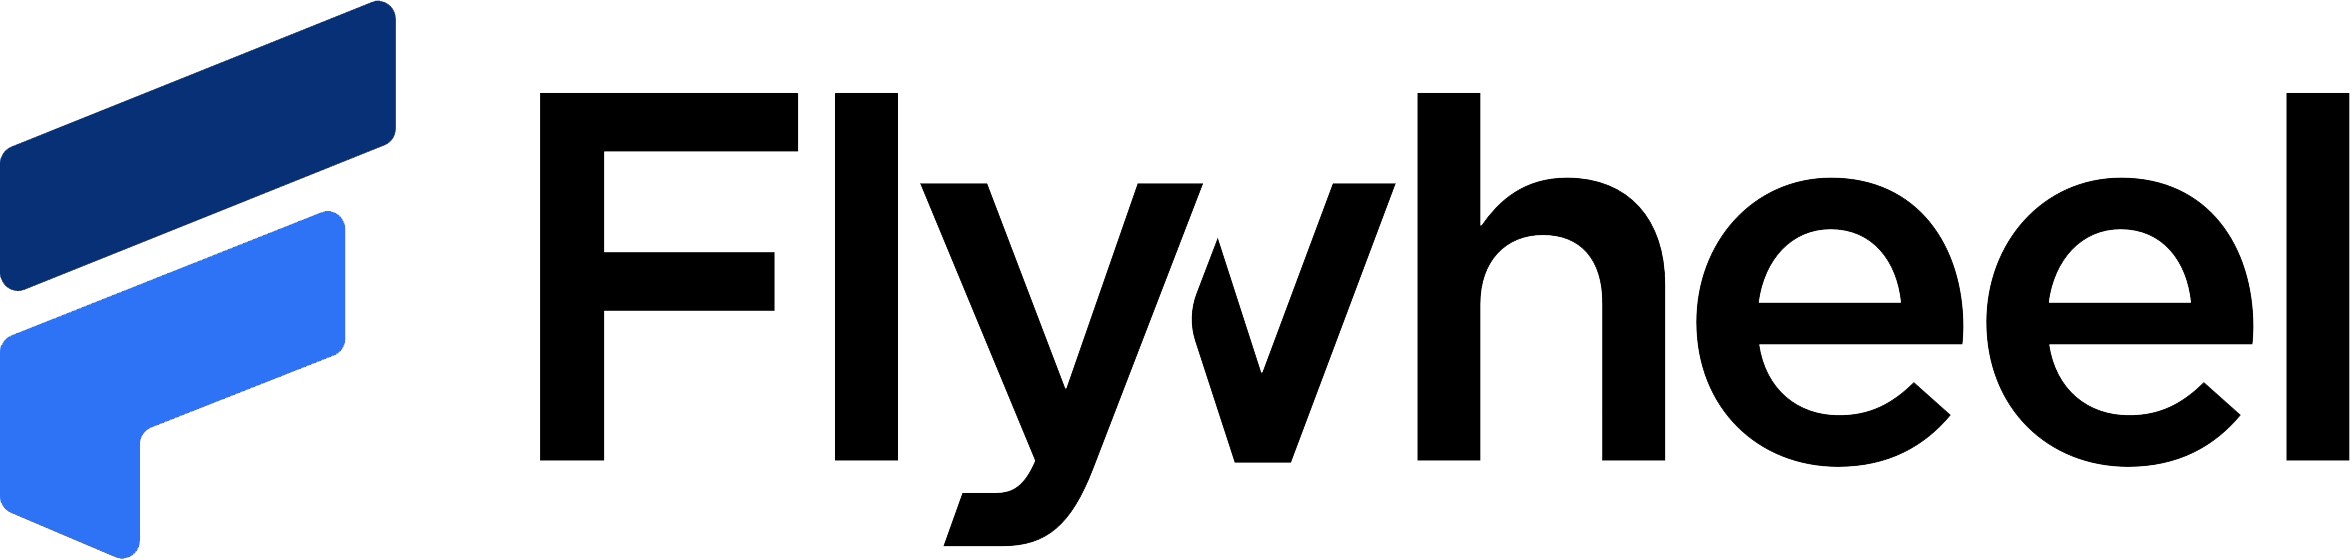 Flywheel_logo